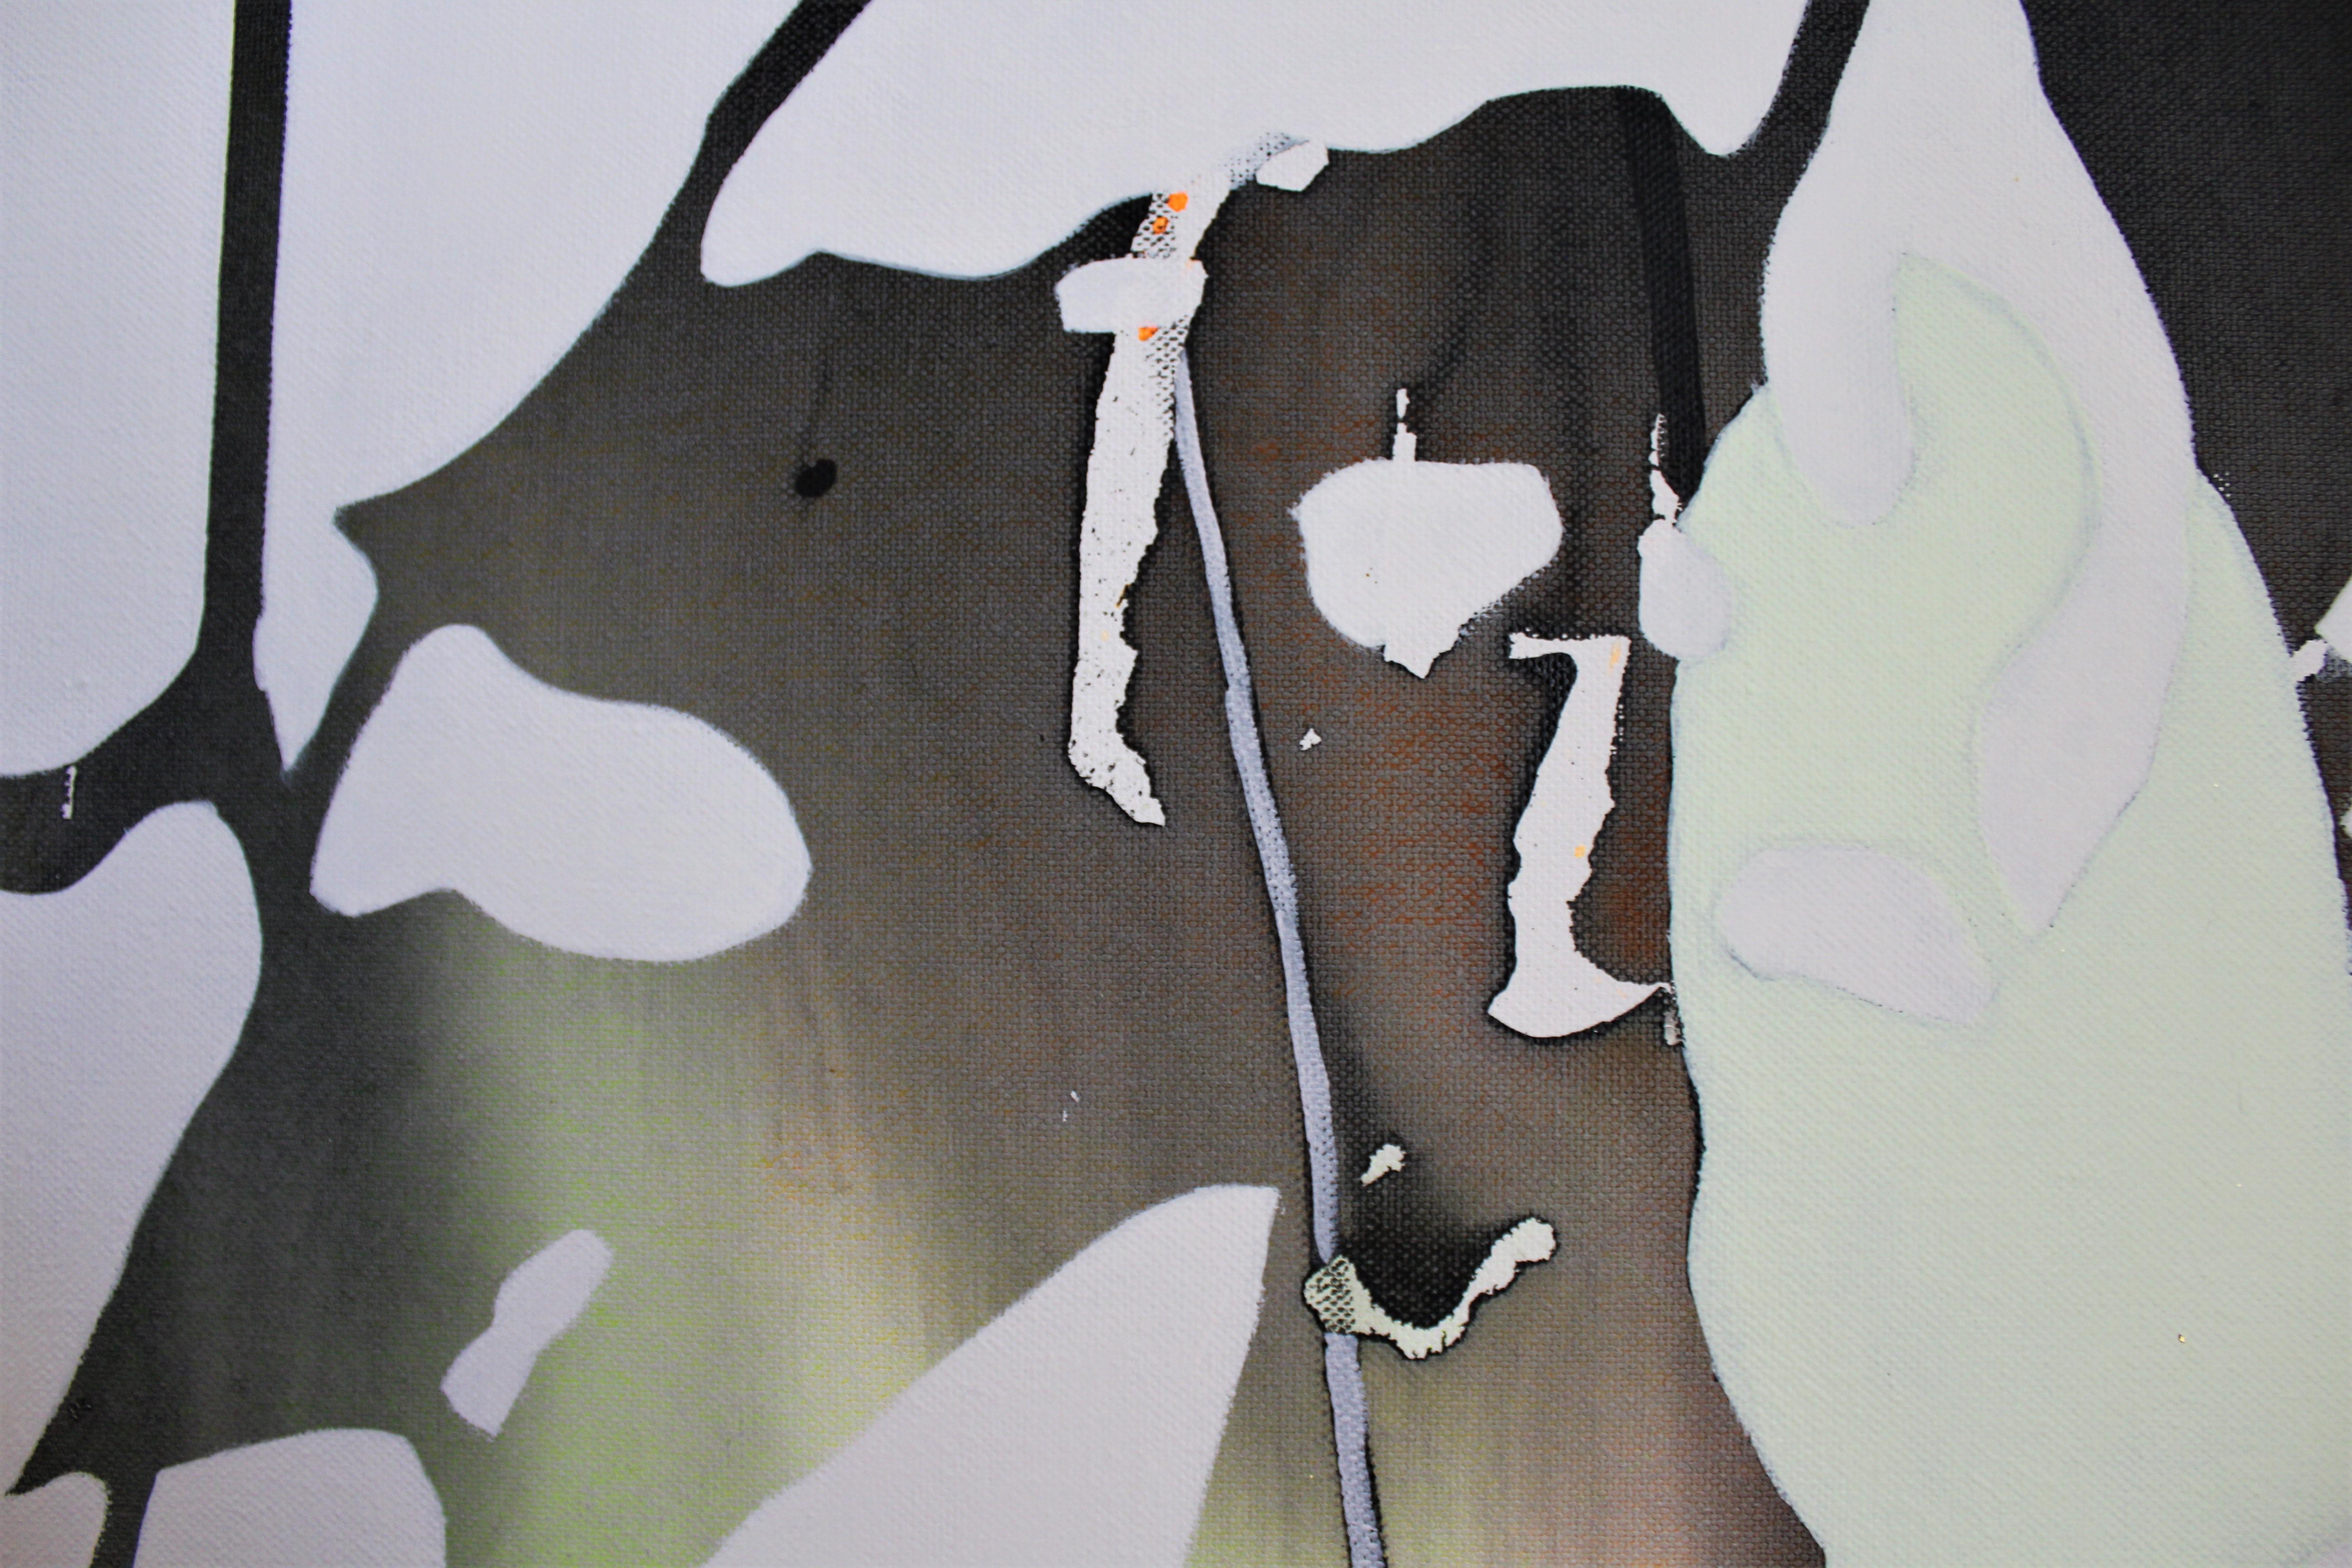 Water Reflection at Juno - Gold Abstract Painting by Sibel Kocabasi